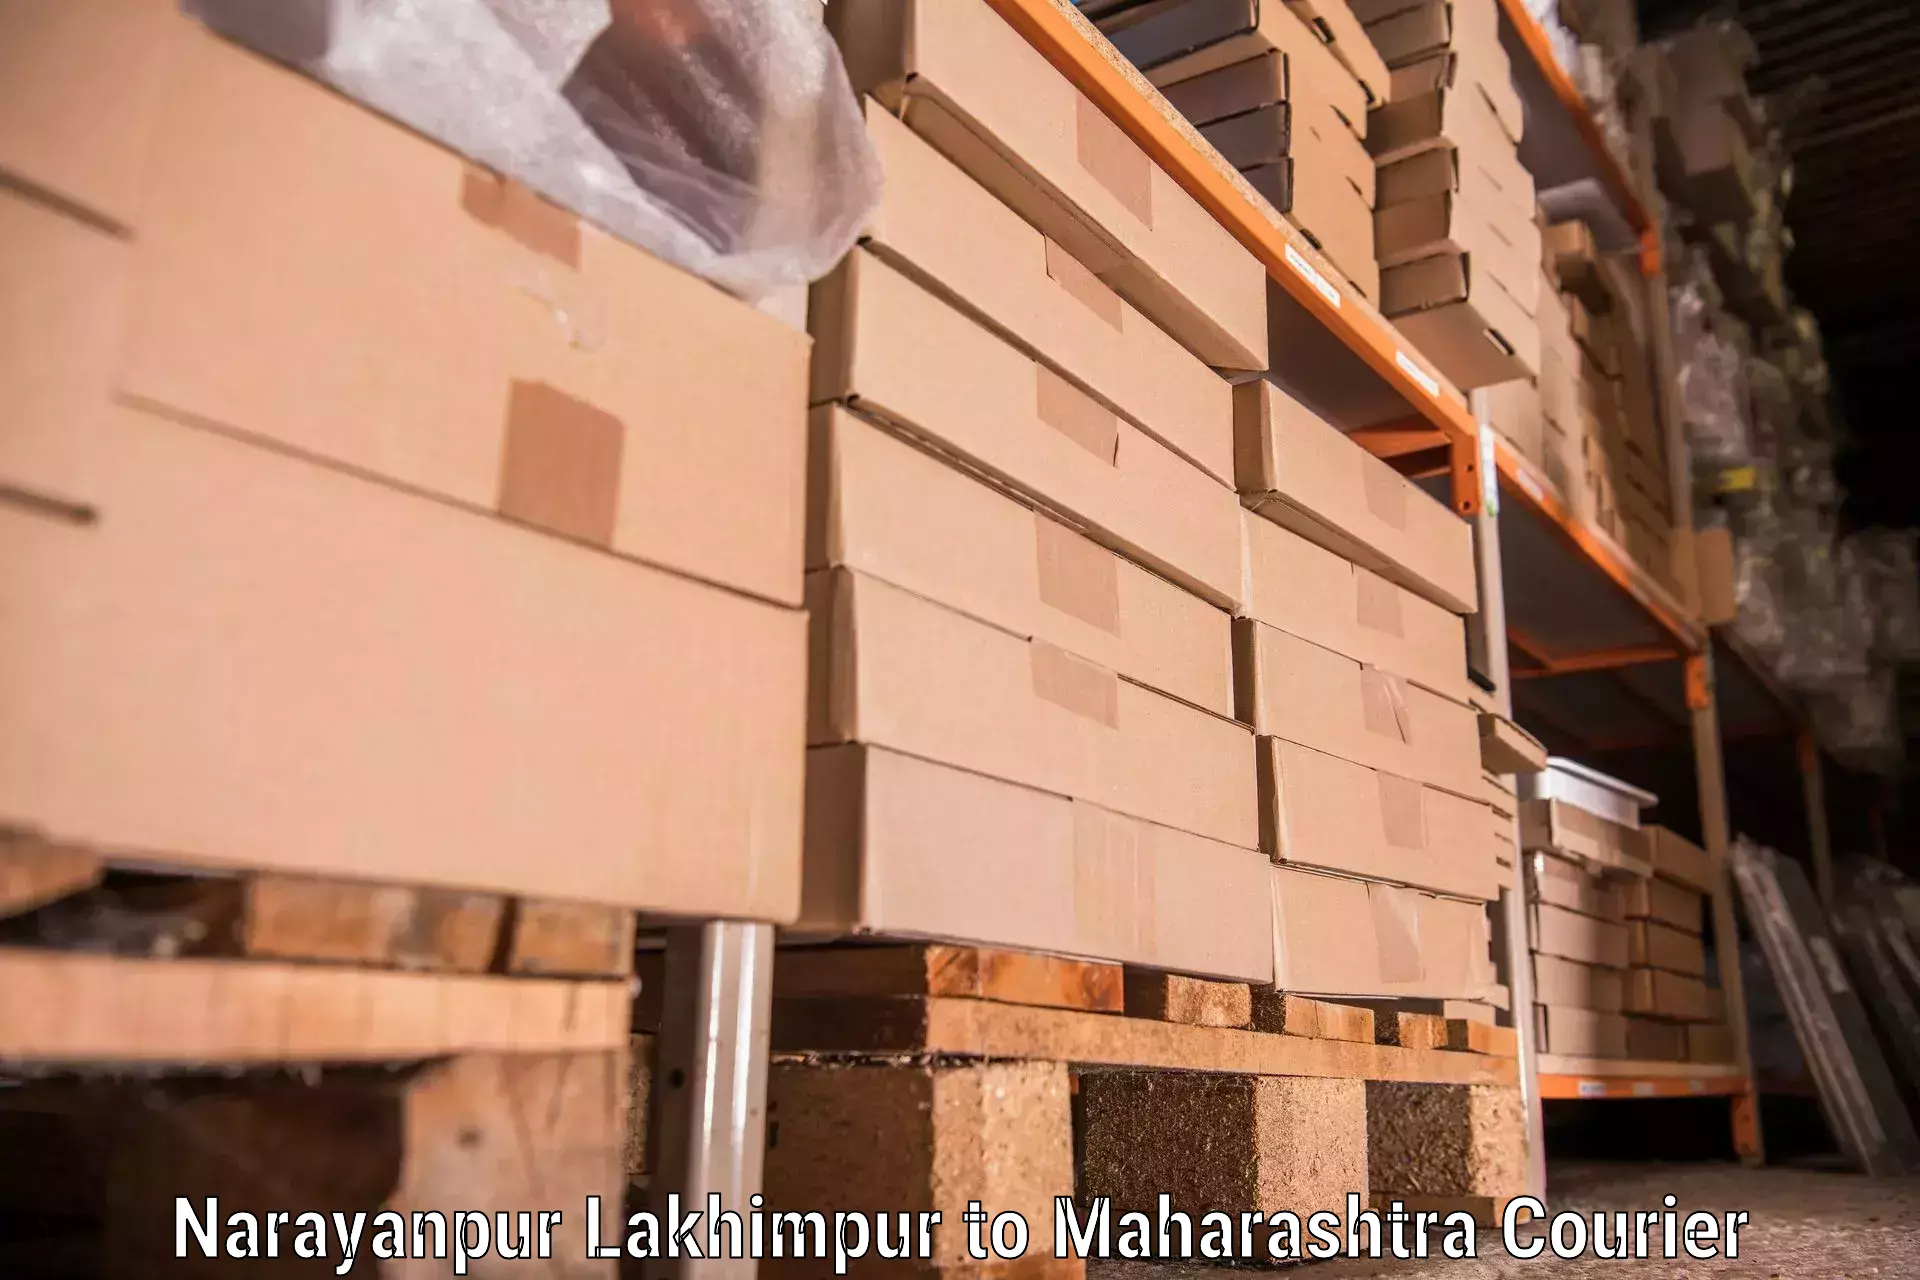 Furniture moving service Narayanpur Lakhimpur to Yeola